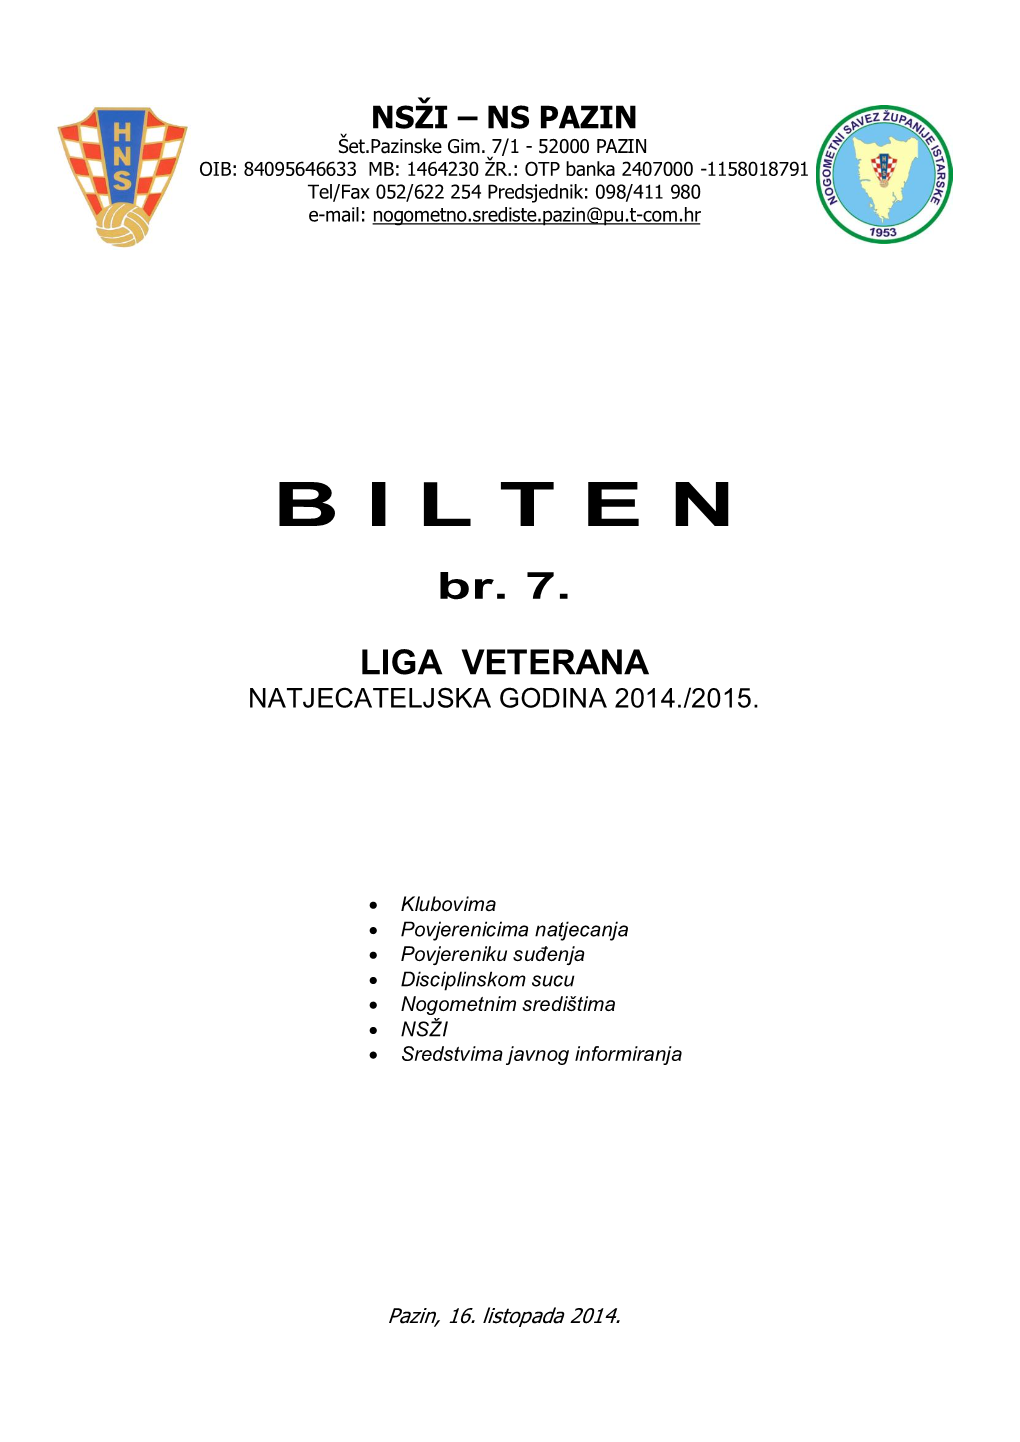 Liga Veterana Natjecateljska Godina 2014./2015